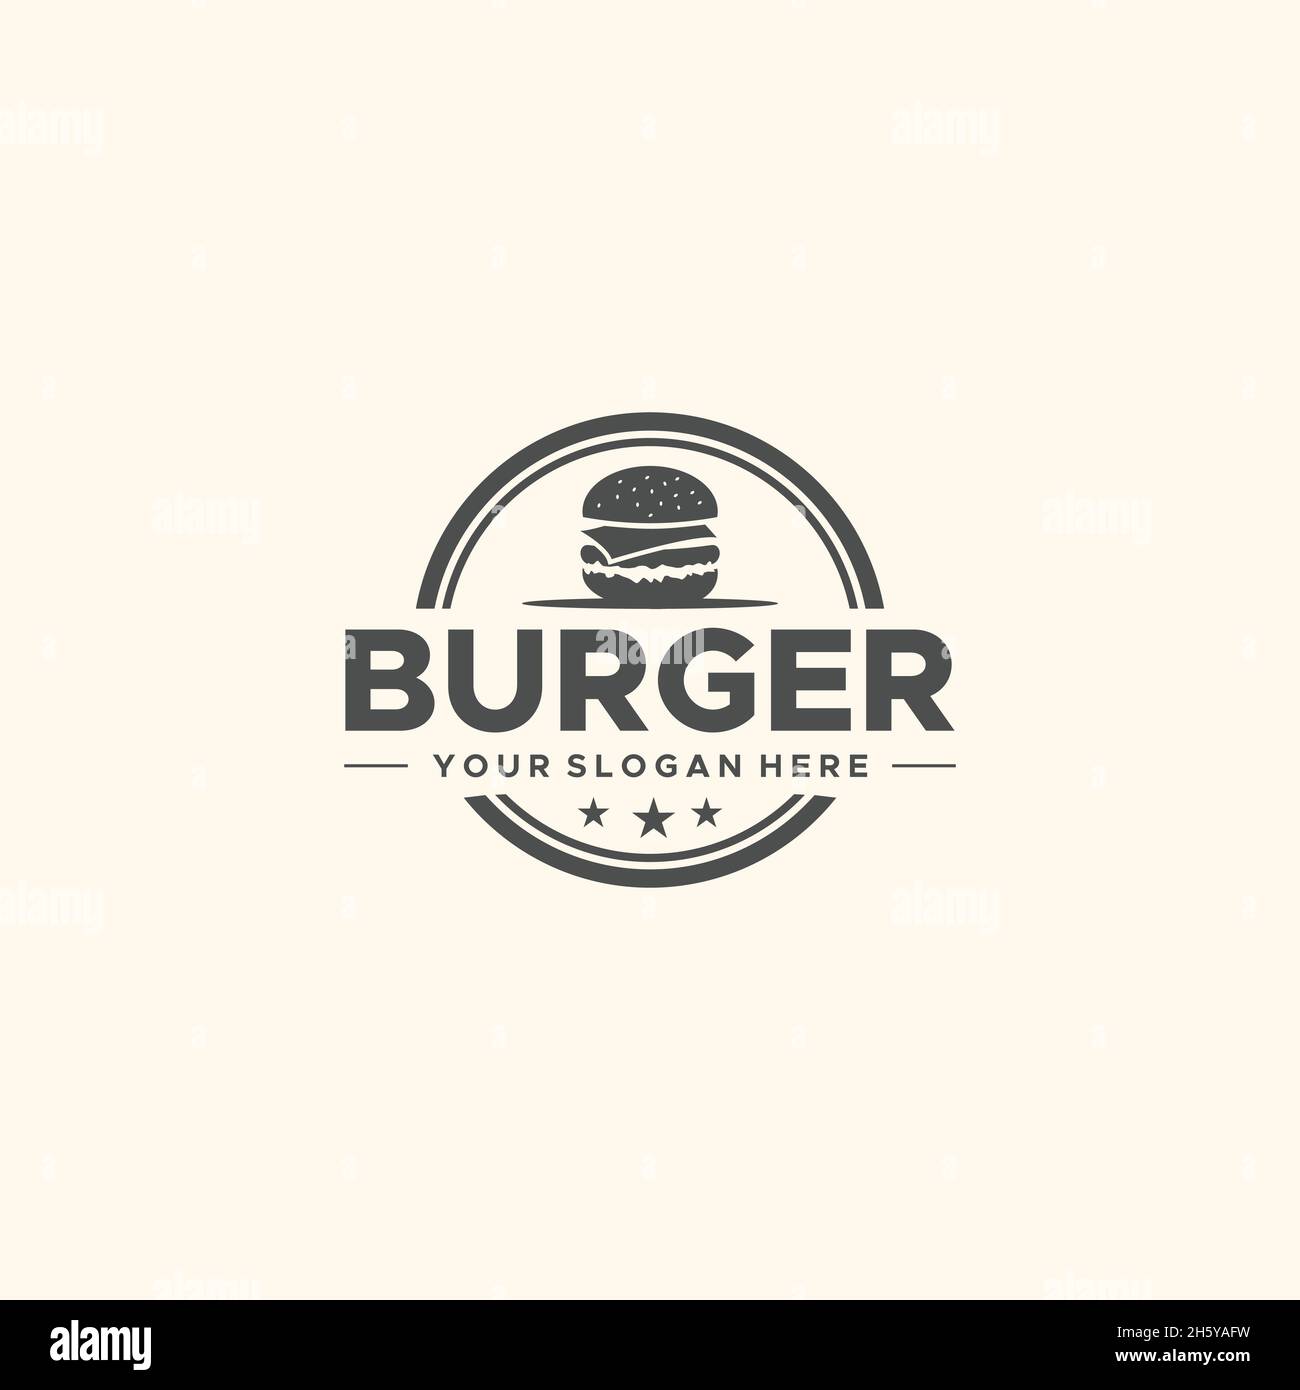 Design minimalista CON logo BURGER Vegetles Bread Illustrazione Vettoriale